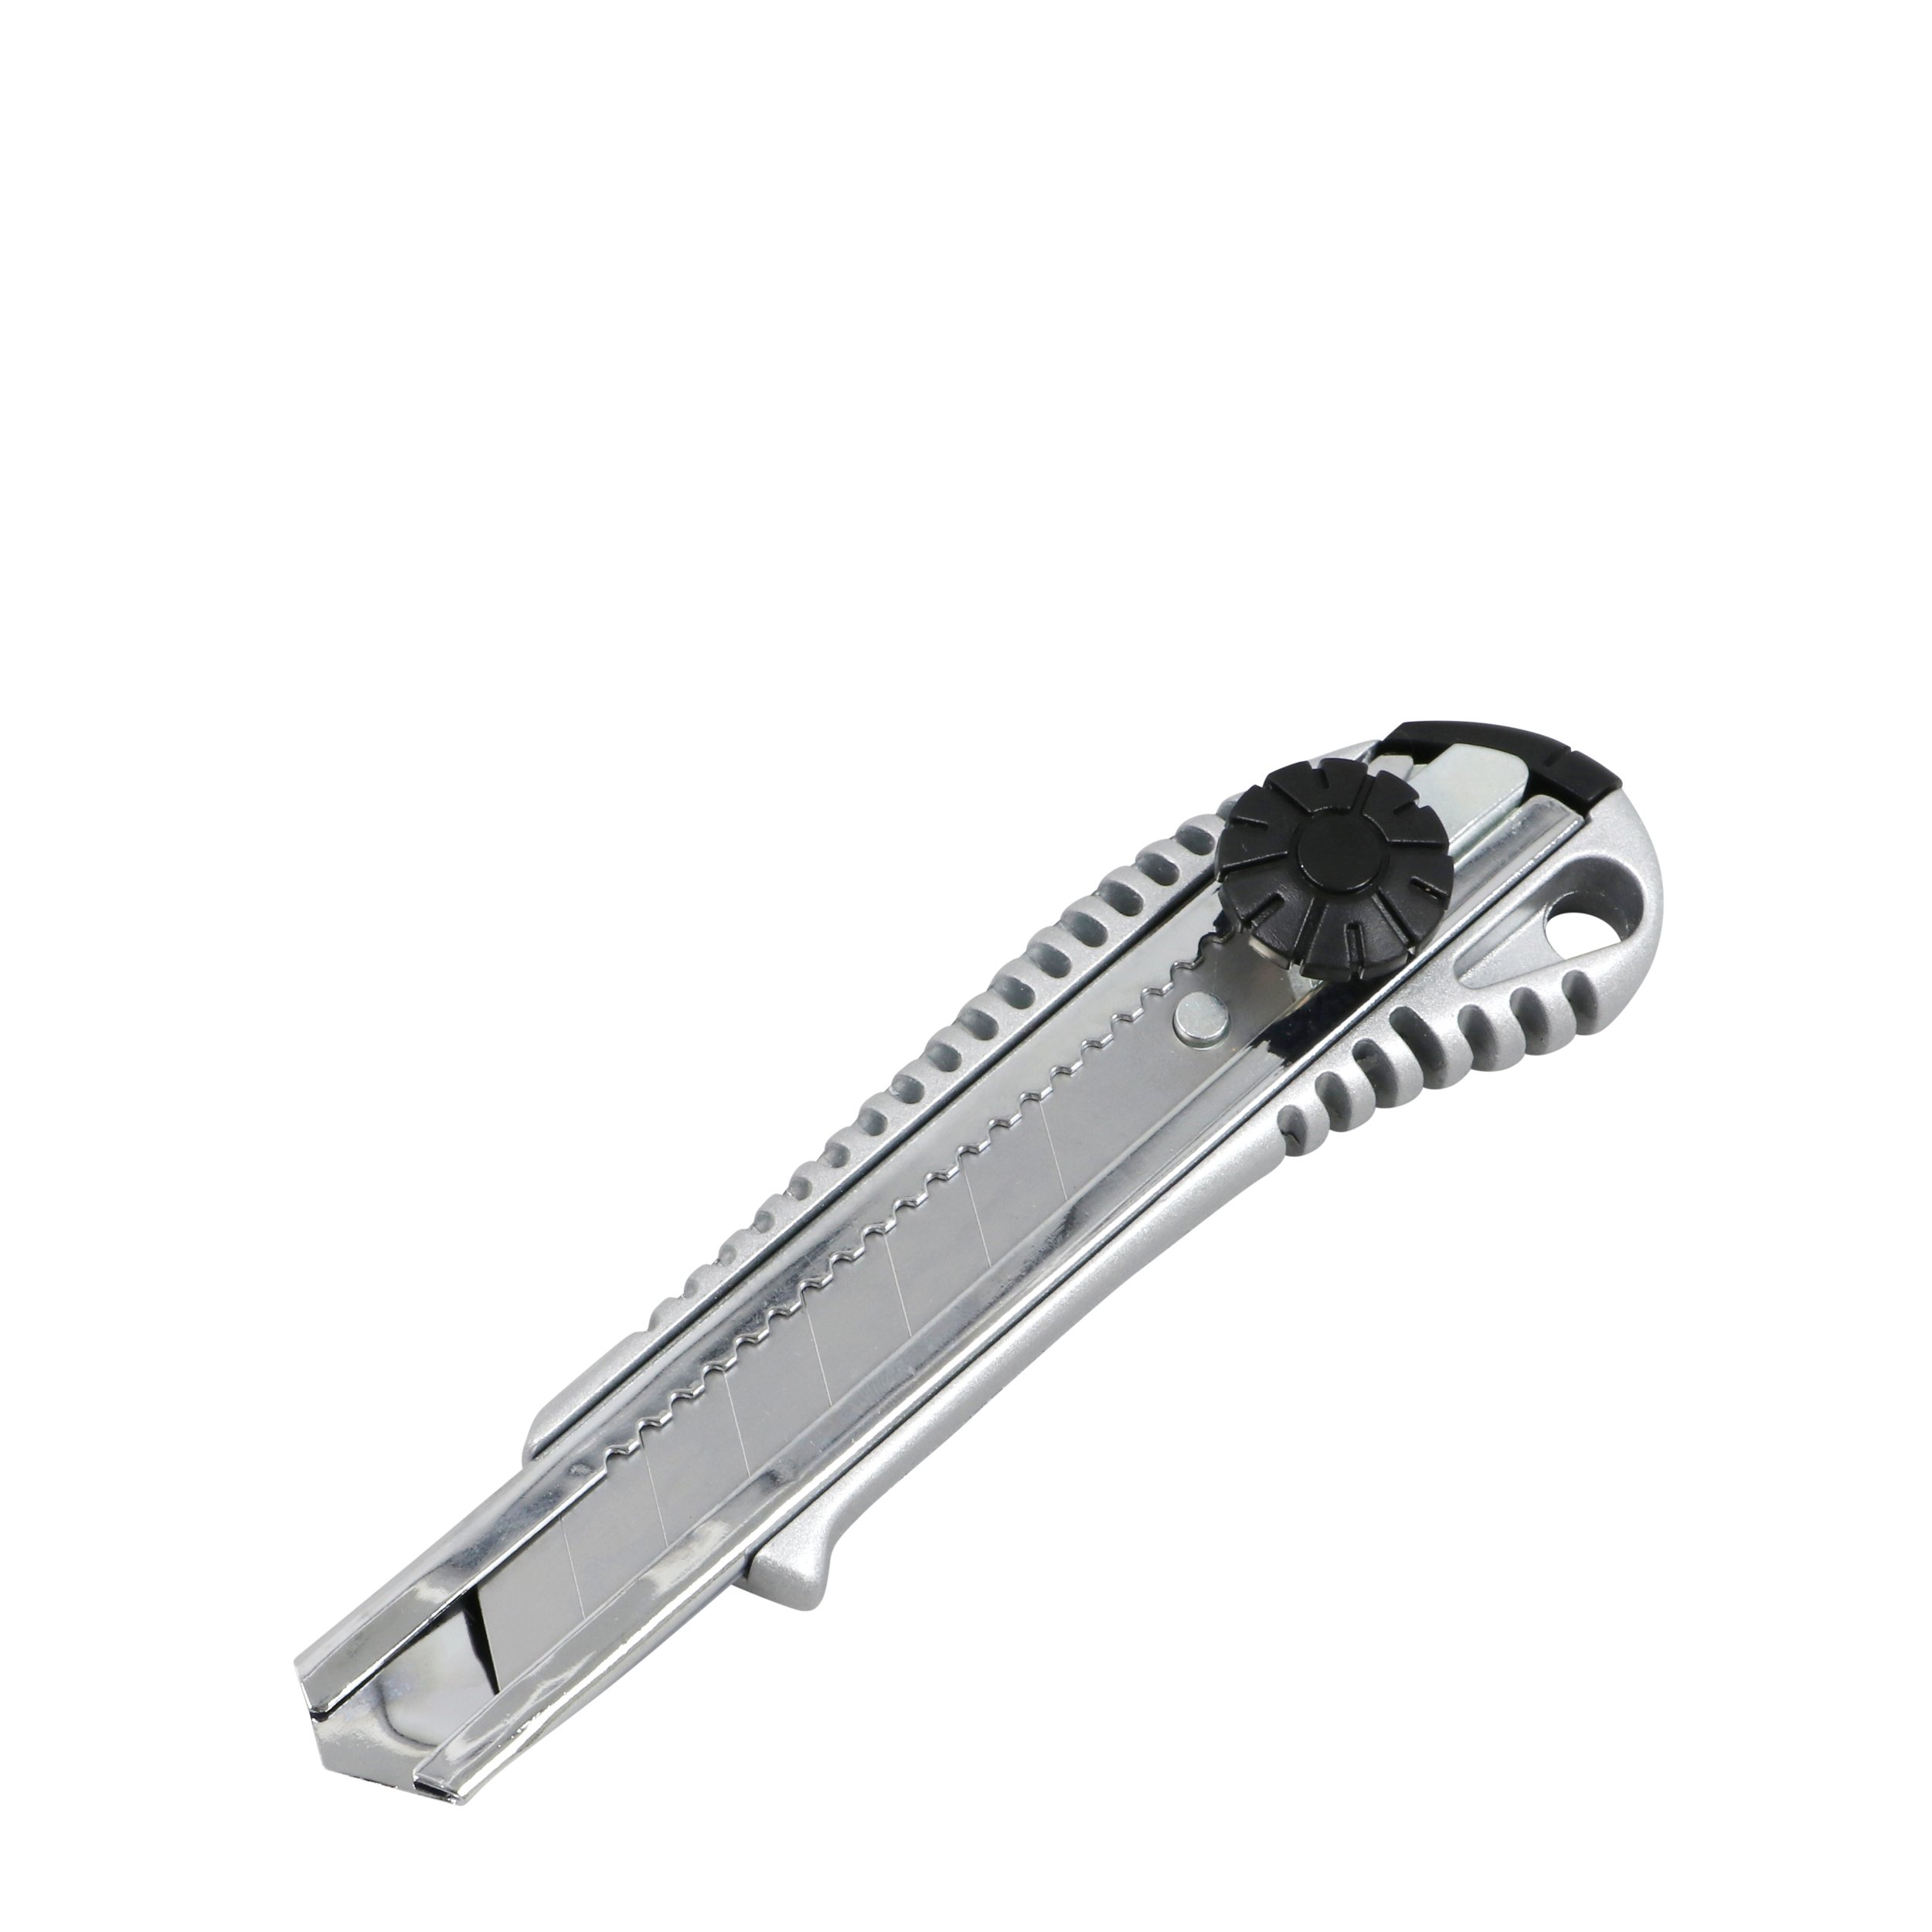 Cuttermesser aus Metall mit Feststellrad | SPRINTIS